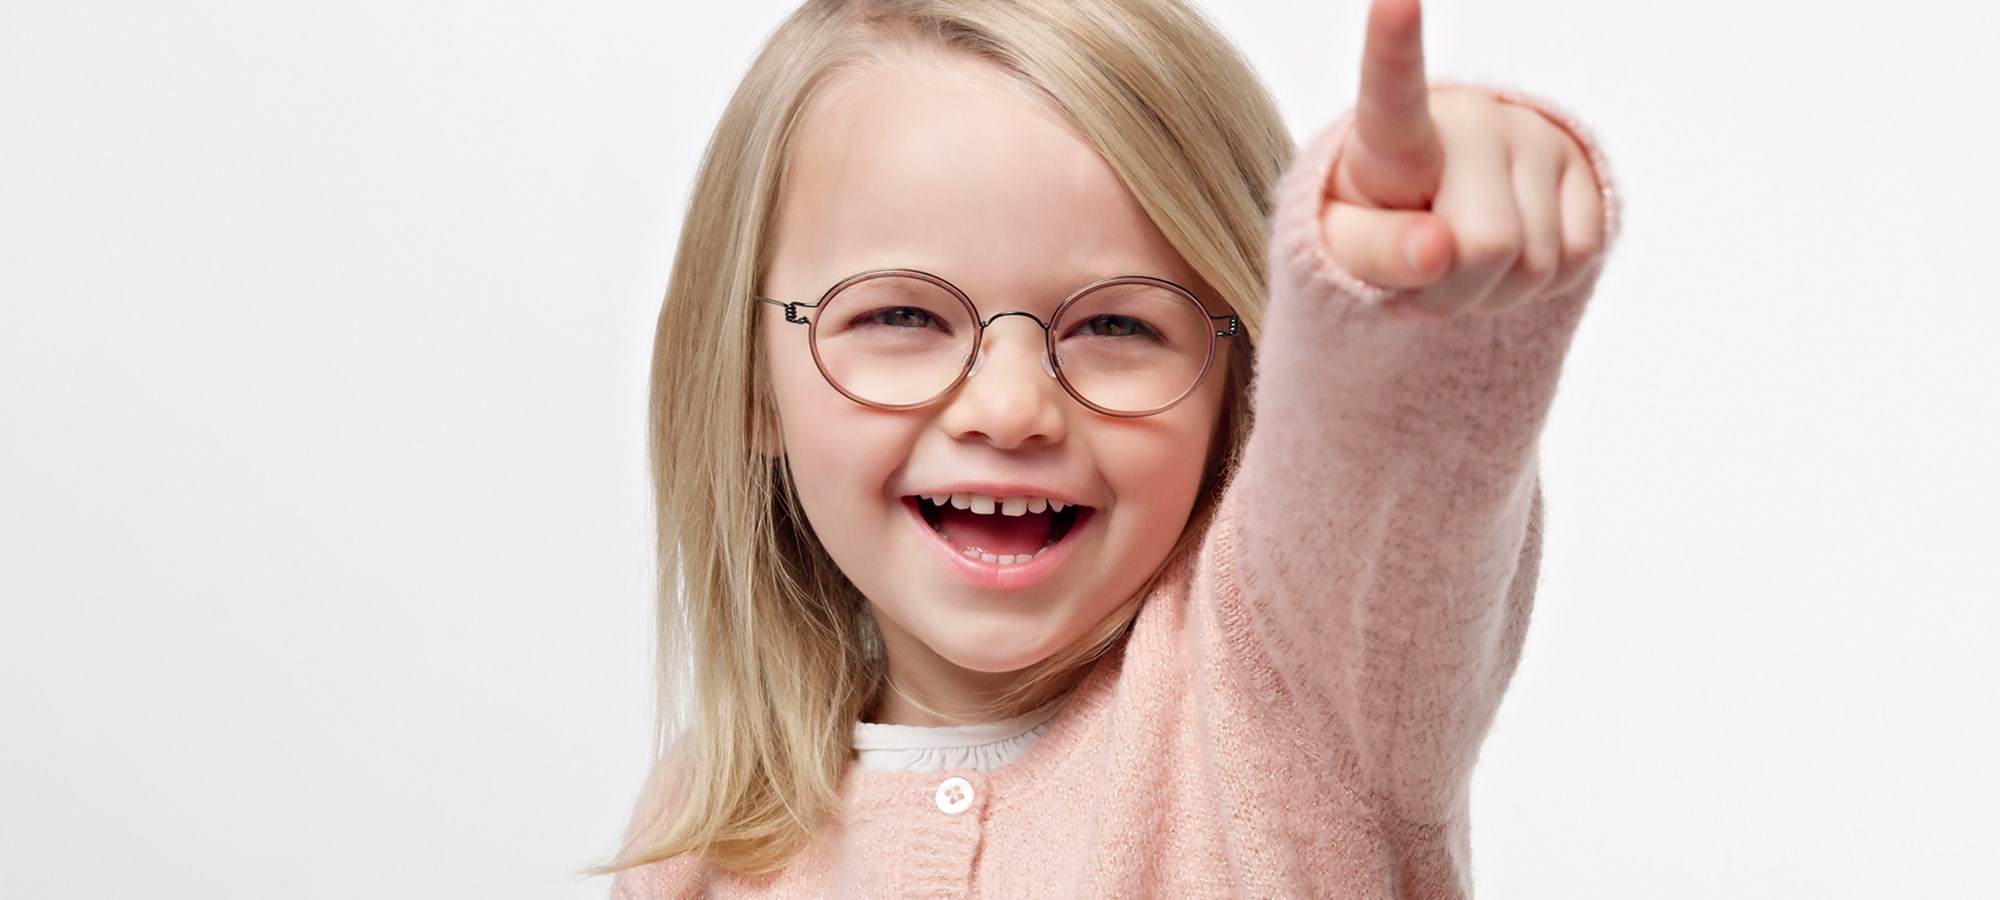 התאמה נכונה של משקפיים לילדים